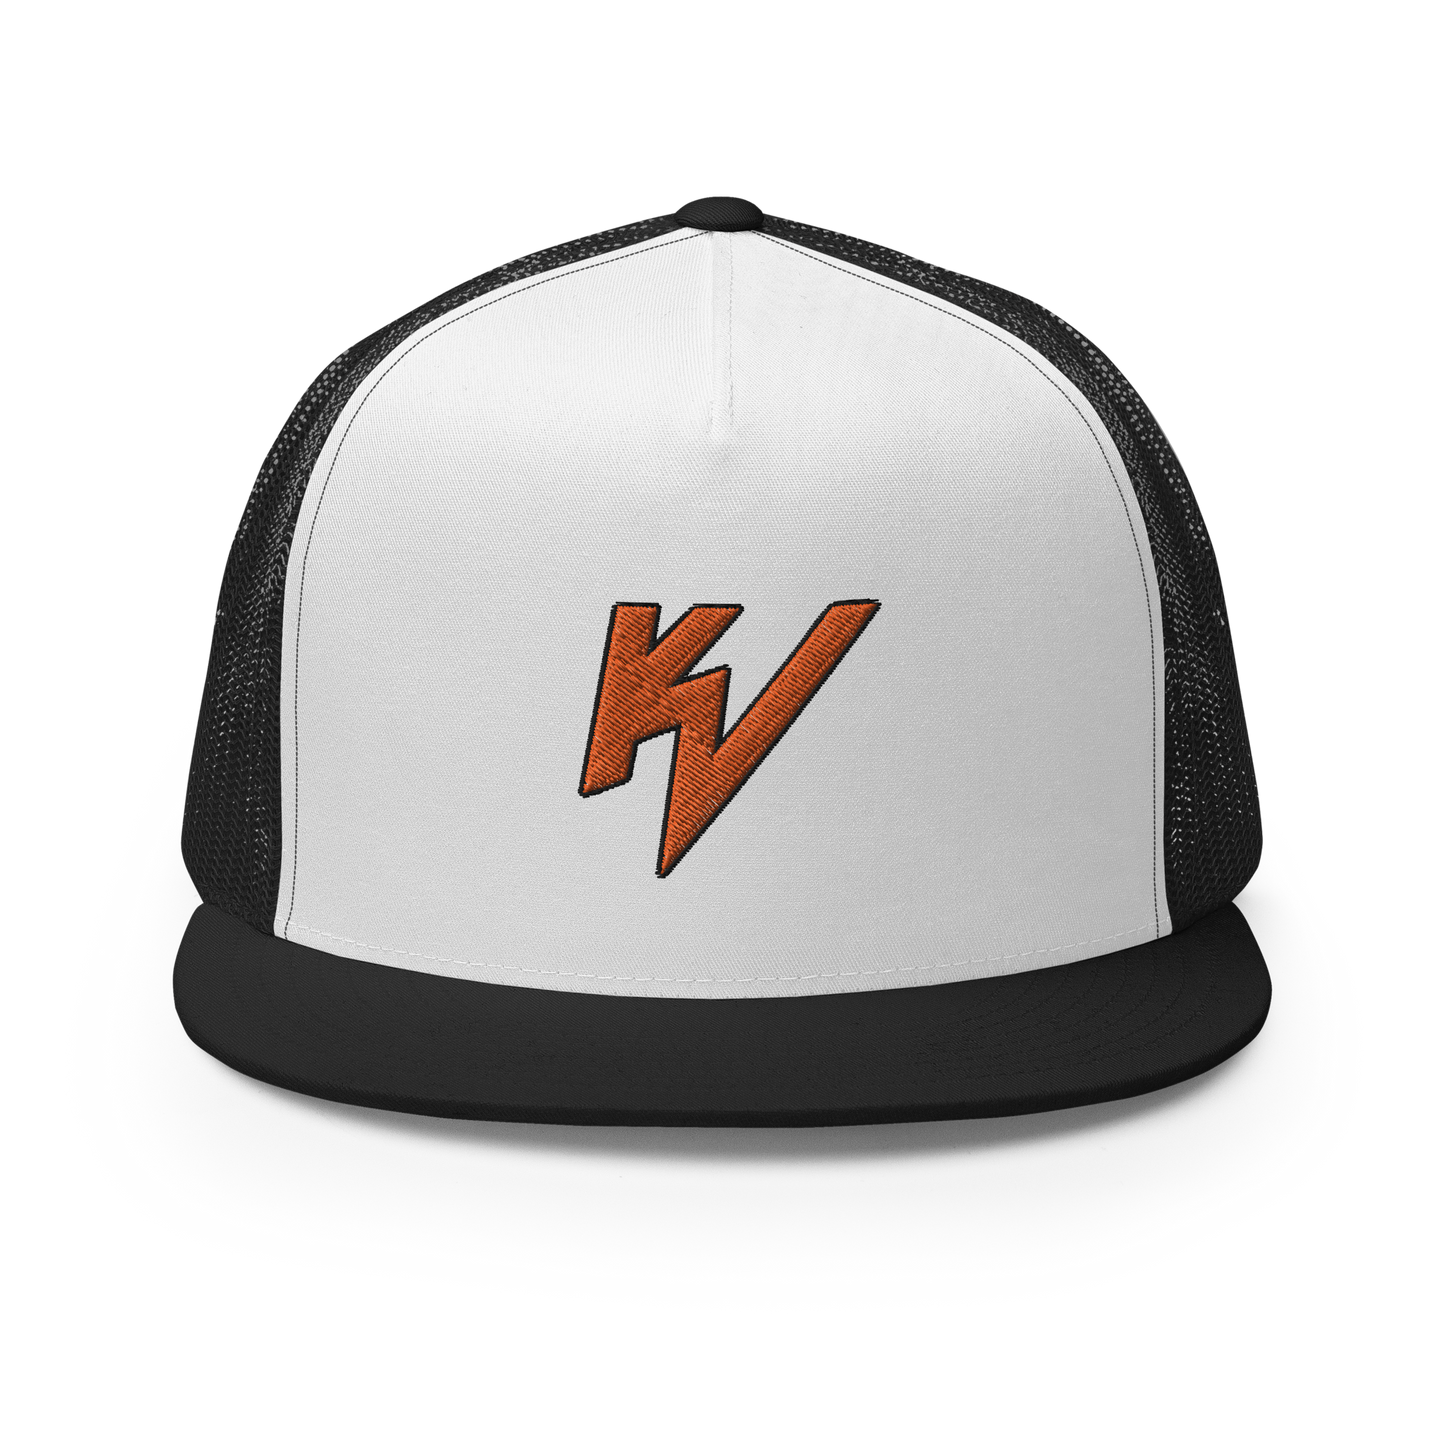 WEBB TRUCKER CAP